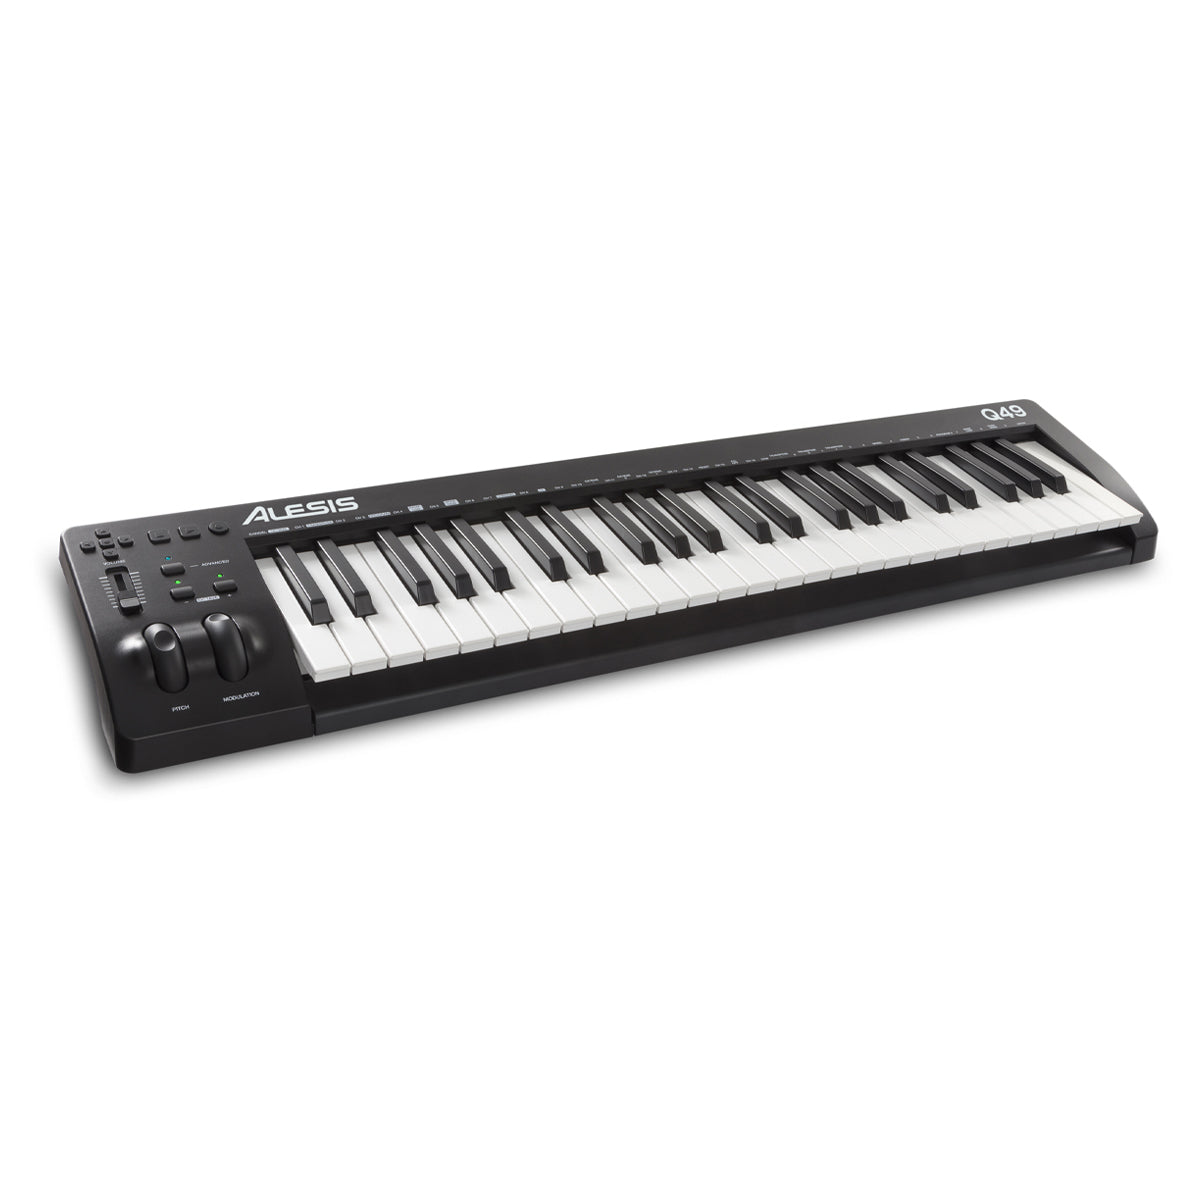 MIDI Keyboard Controller Alesis Q49 MKII